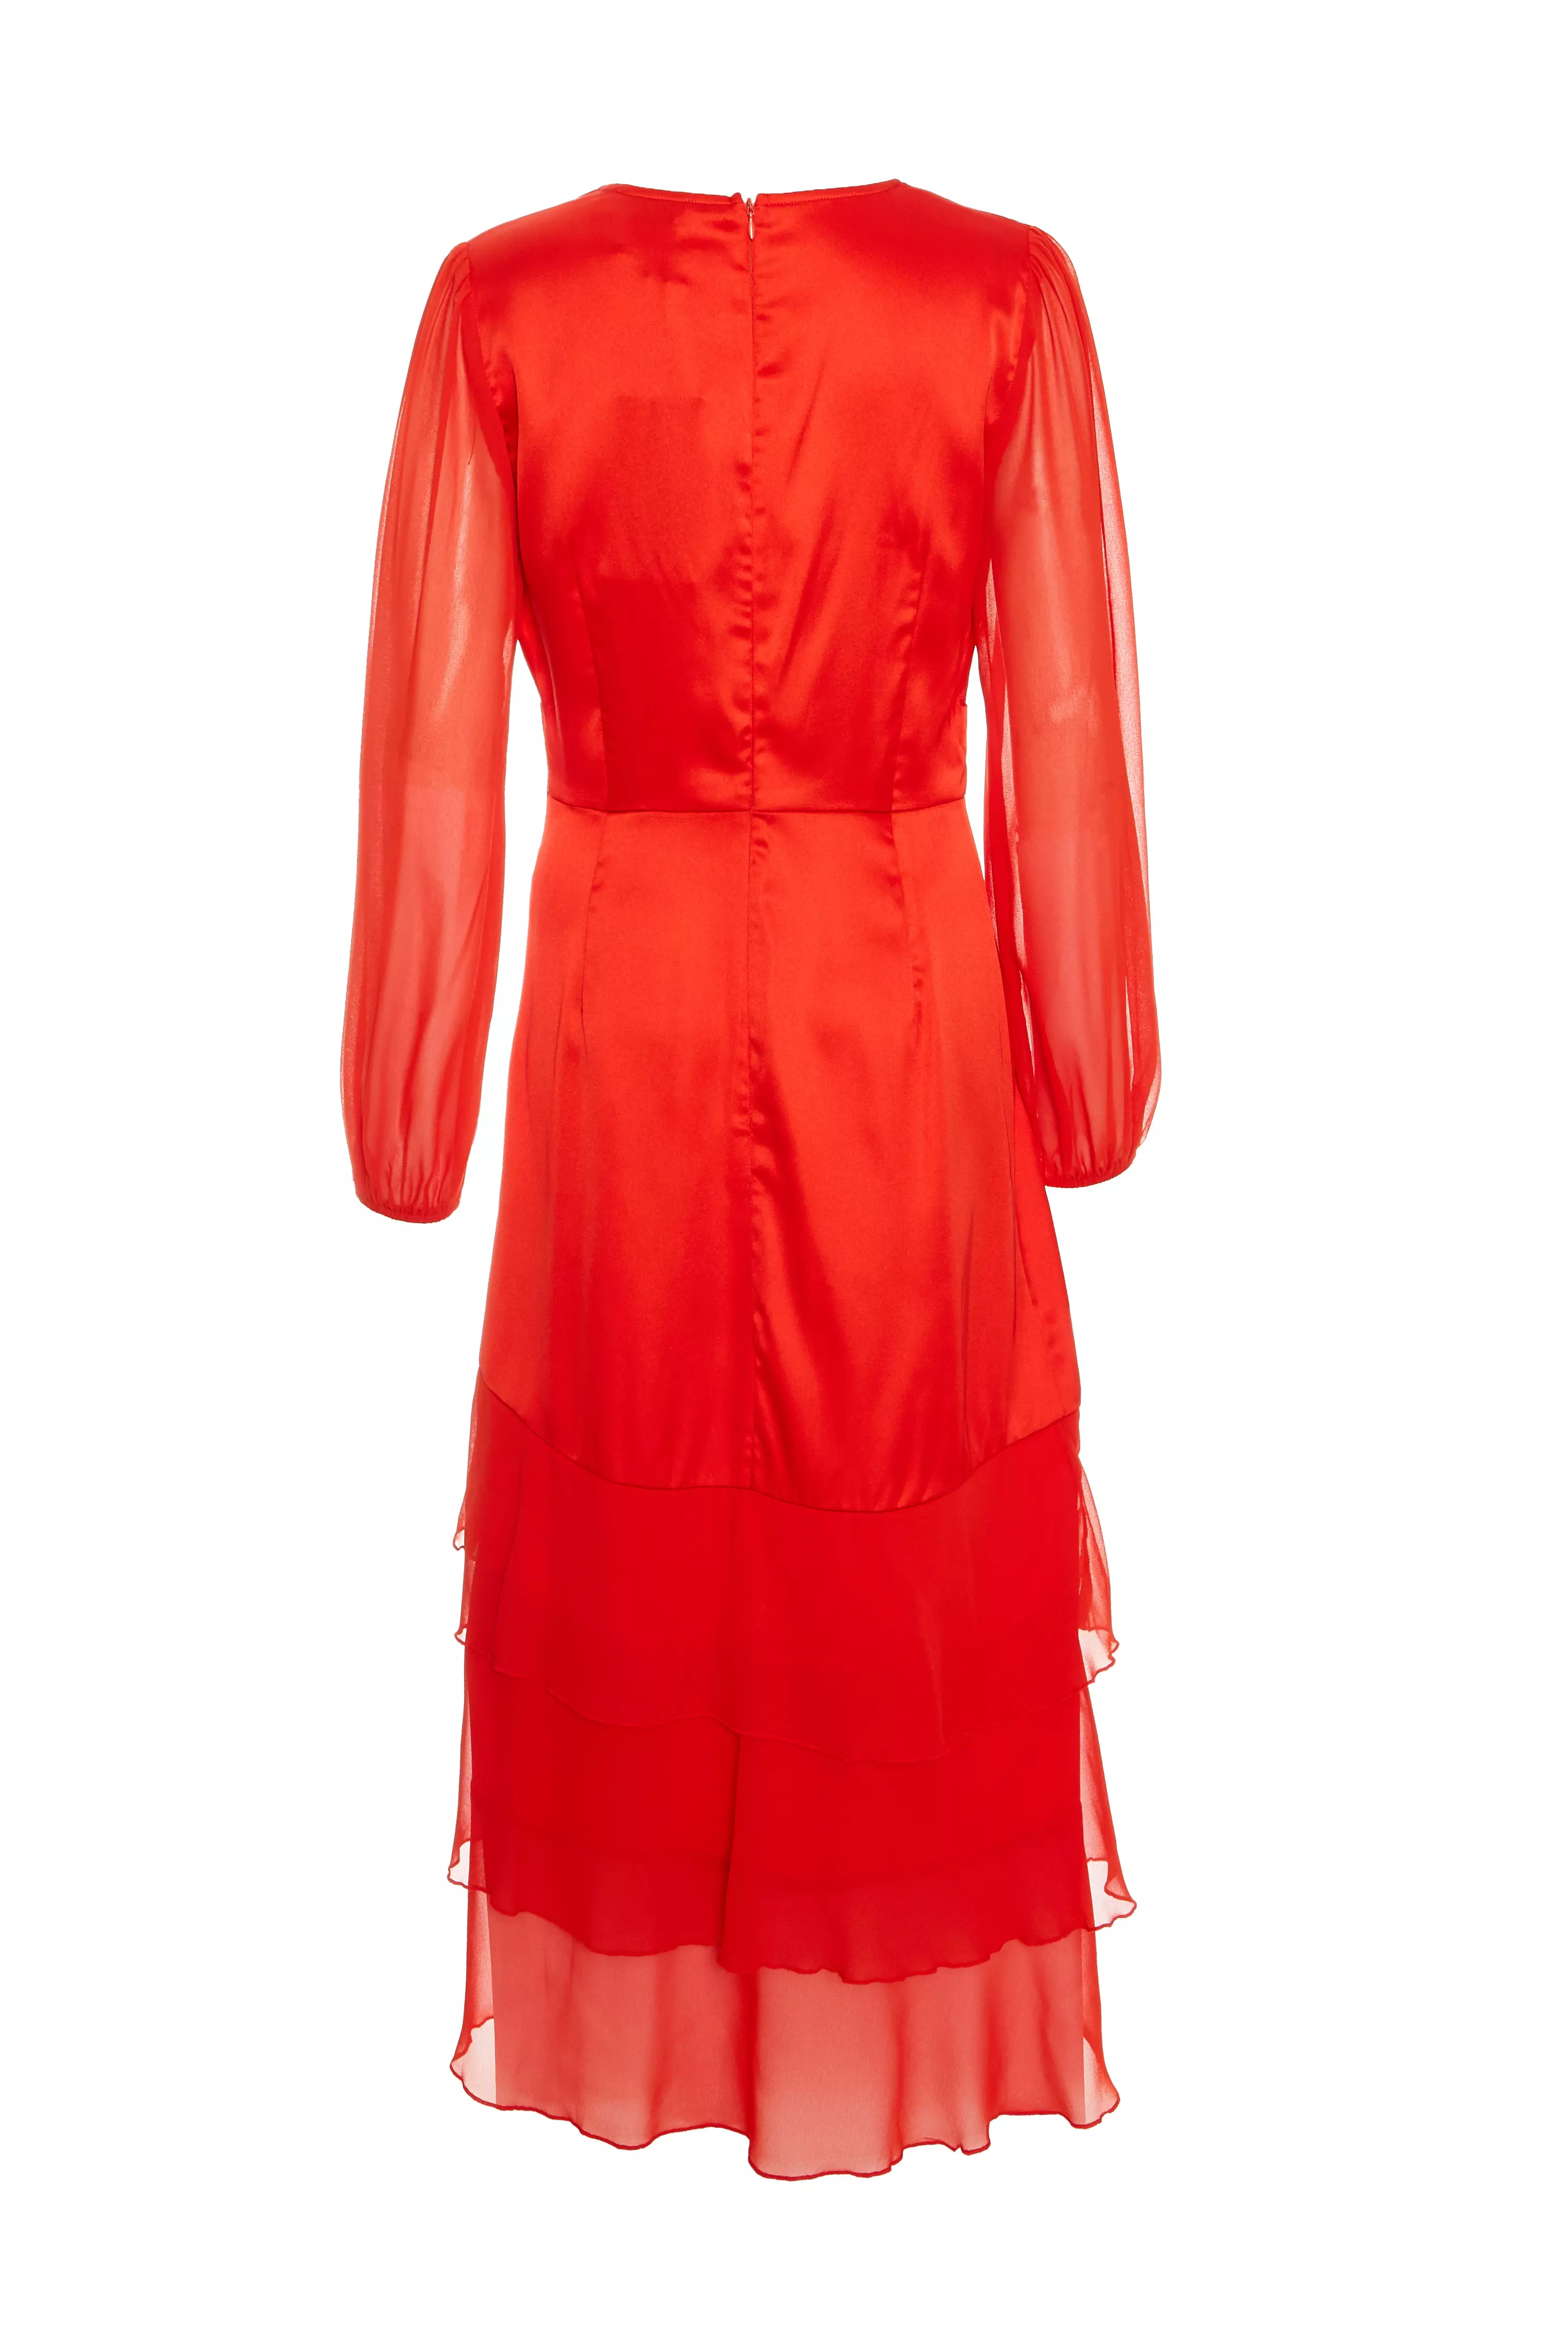 Orange Satin Frill Midi Dress - QUIZ Clothing